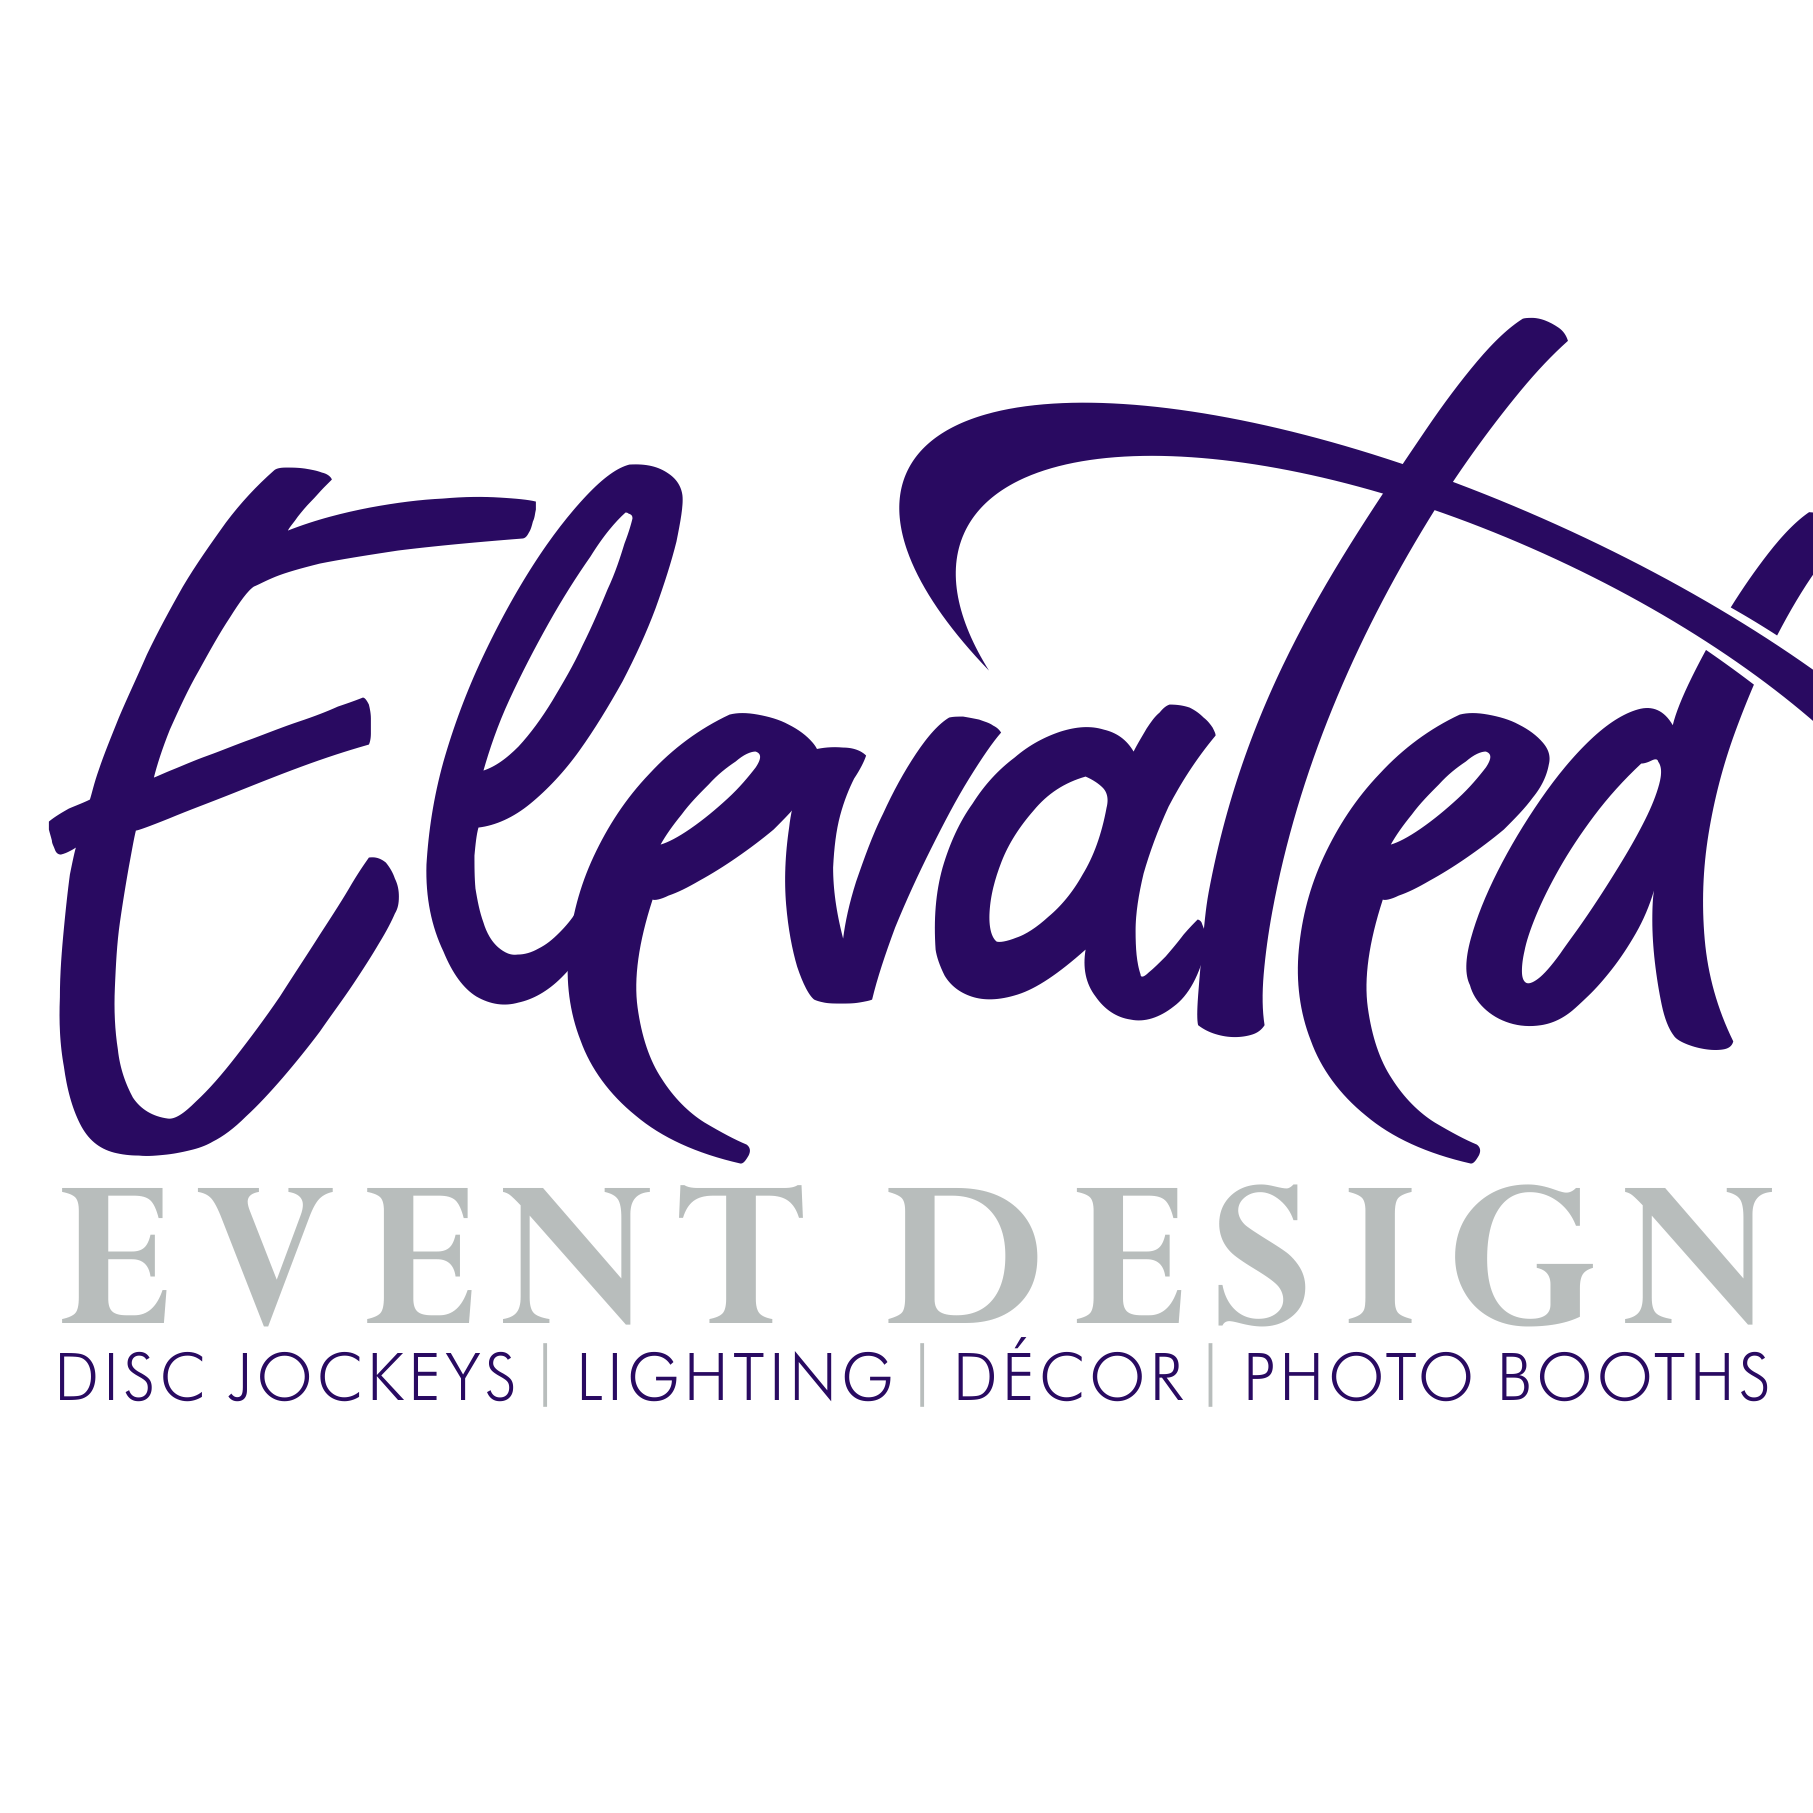 Elevated Event Design Logo